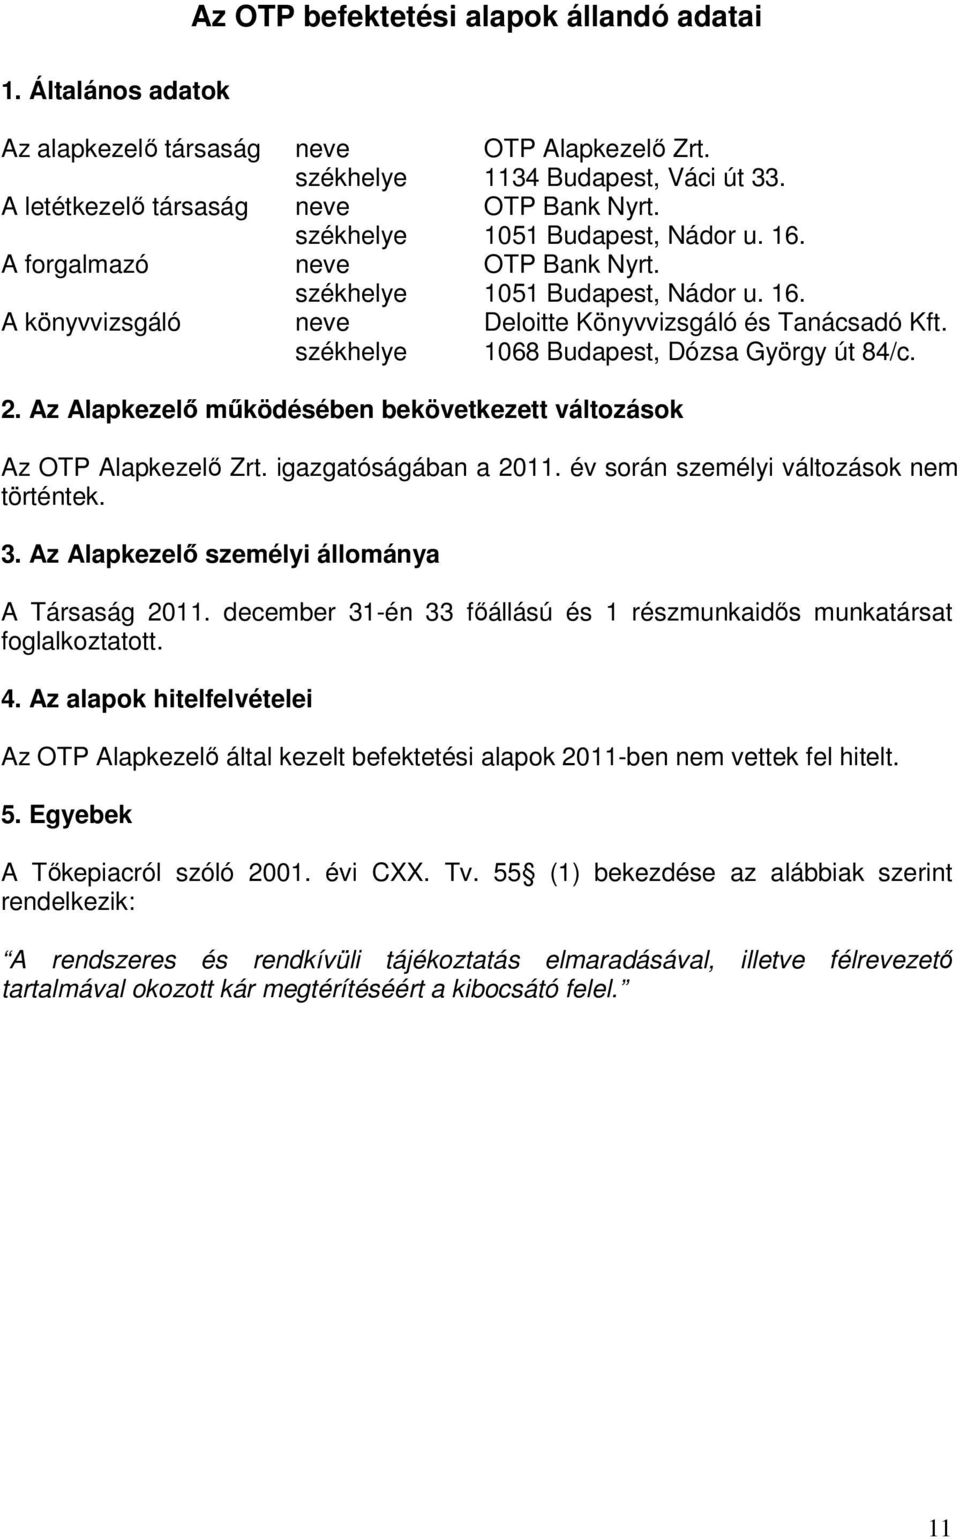 székhelye 1068 Budapest, Dózsa György út 84/c. 2. Az Alapkezelı mőködésében bekövetkezett változások Az OTP Alapkezelı Zrt. igazgatóságában a 2011. év során személyi változások nem történtek. 3.